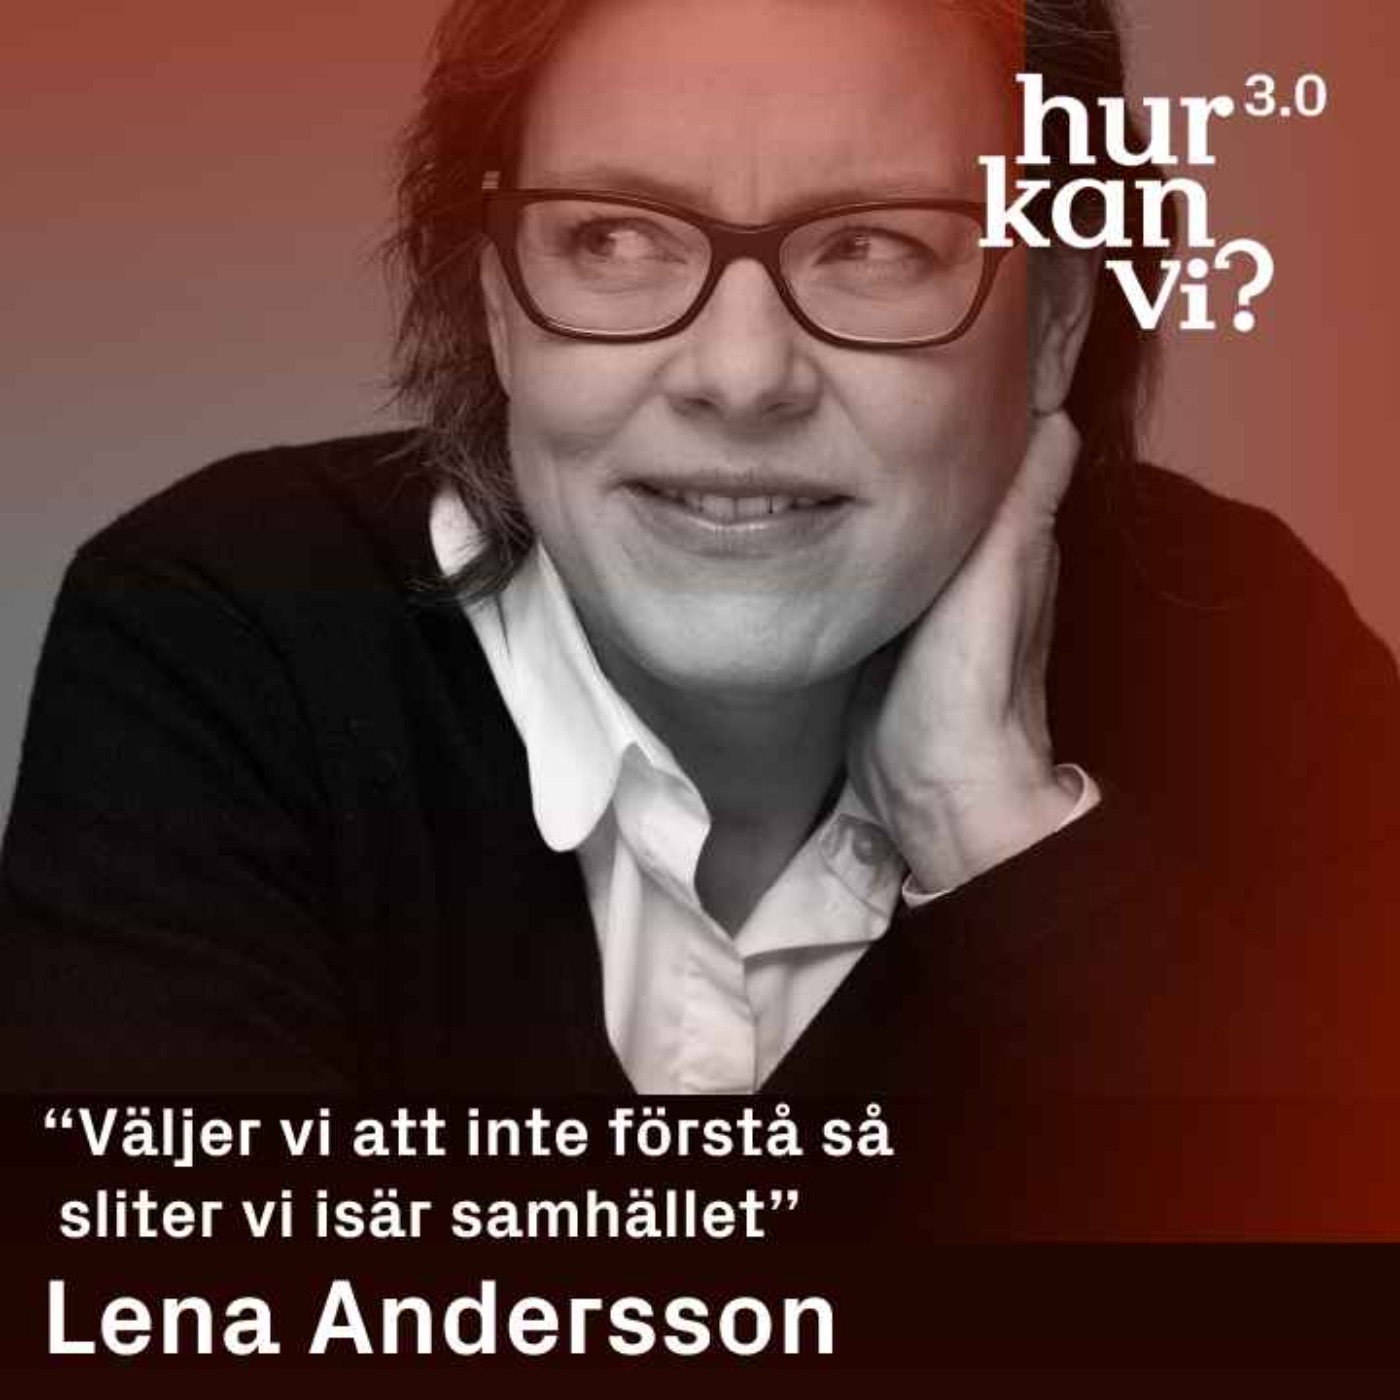 Lena Andersson - “Väljer vi att inte förstå så sliter vi isär samhället”